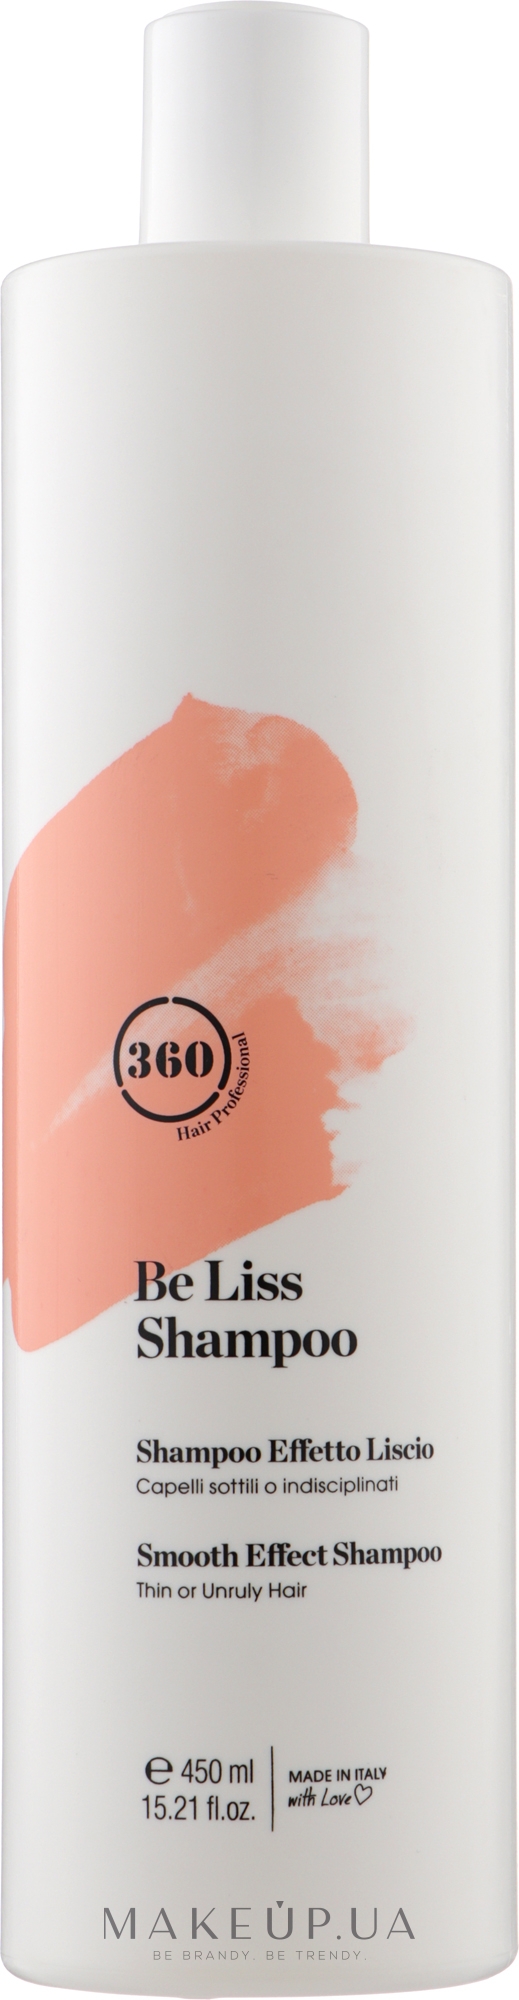 Шампунь с эффектом разглаживания для тонких и непослушных волос - 360 Be Liss Shampoo — фото 450ml